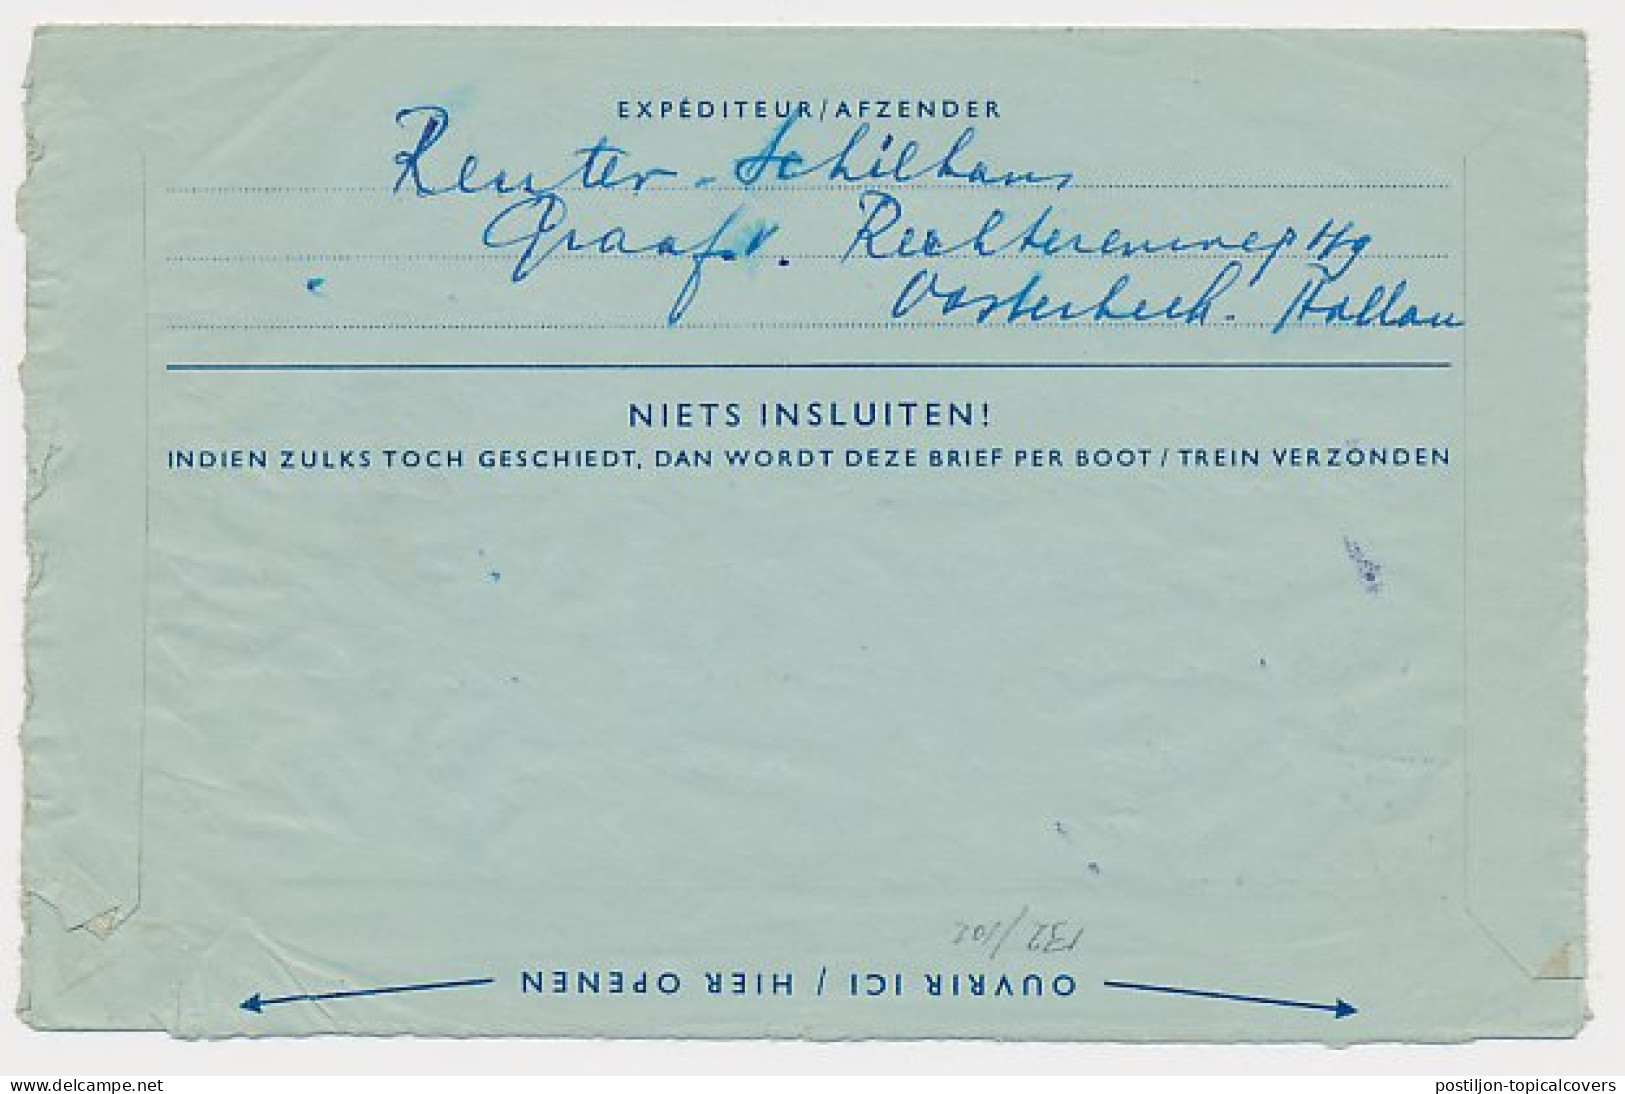 Luchtpostblad G. 10 Oosterbeek - Konigswinter Duitsland 1959 - Entiers Postaux